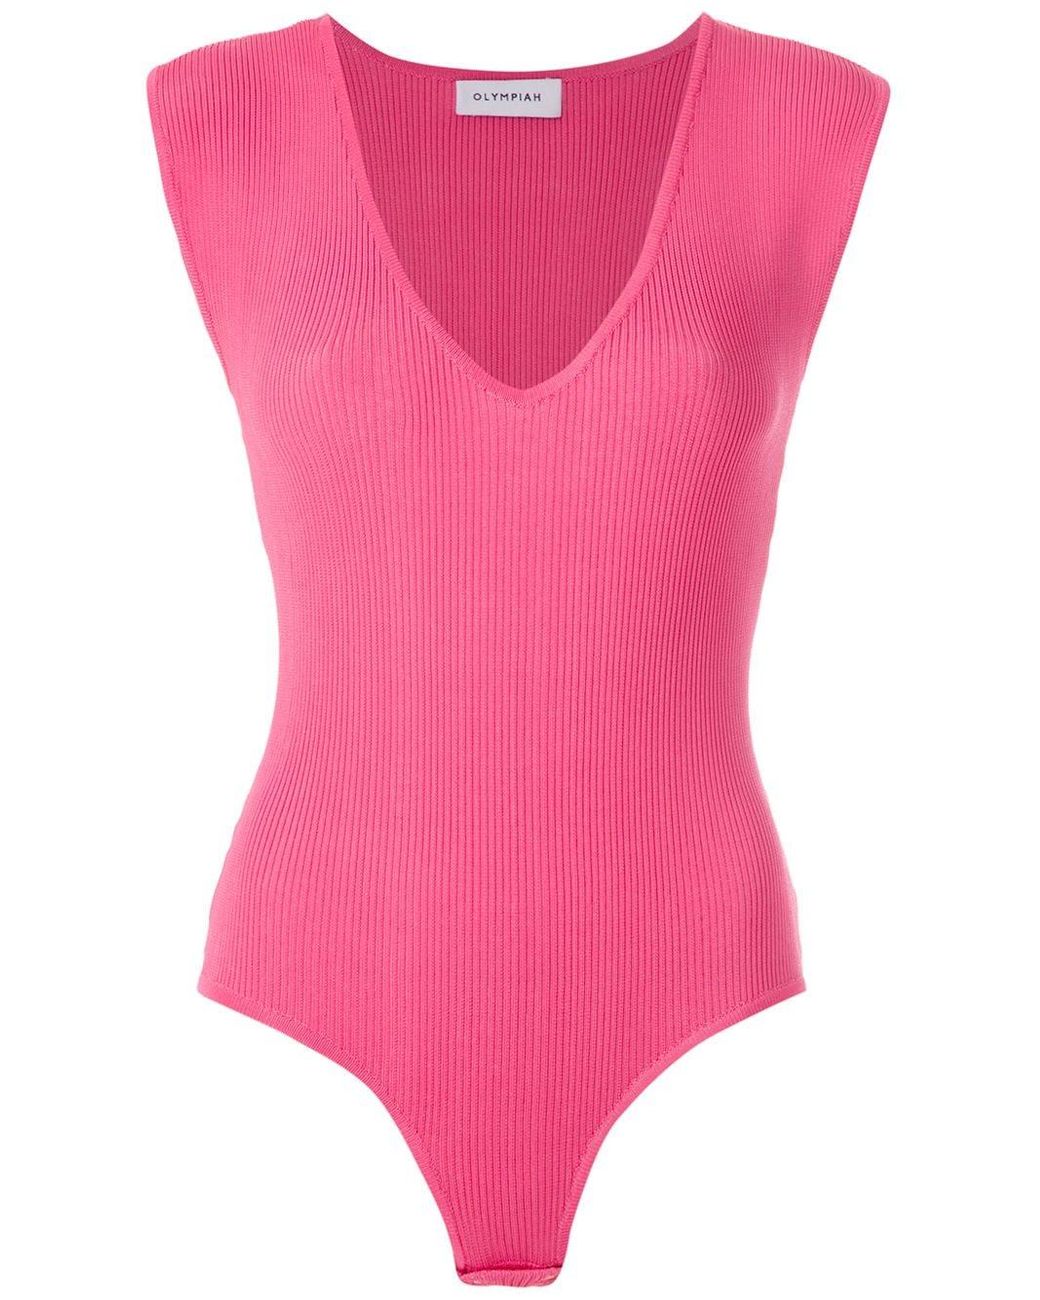 Femme Vêtements Articles de lingerie Bodys Body Margose Synthétique Olympiah en coloris Rose 